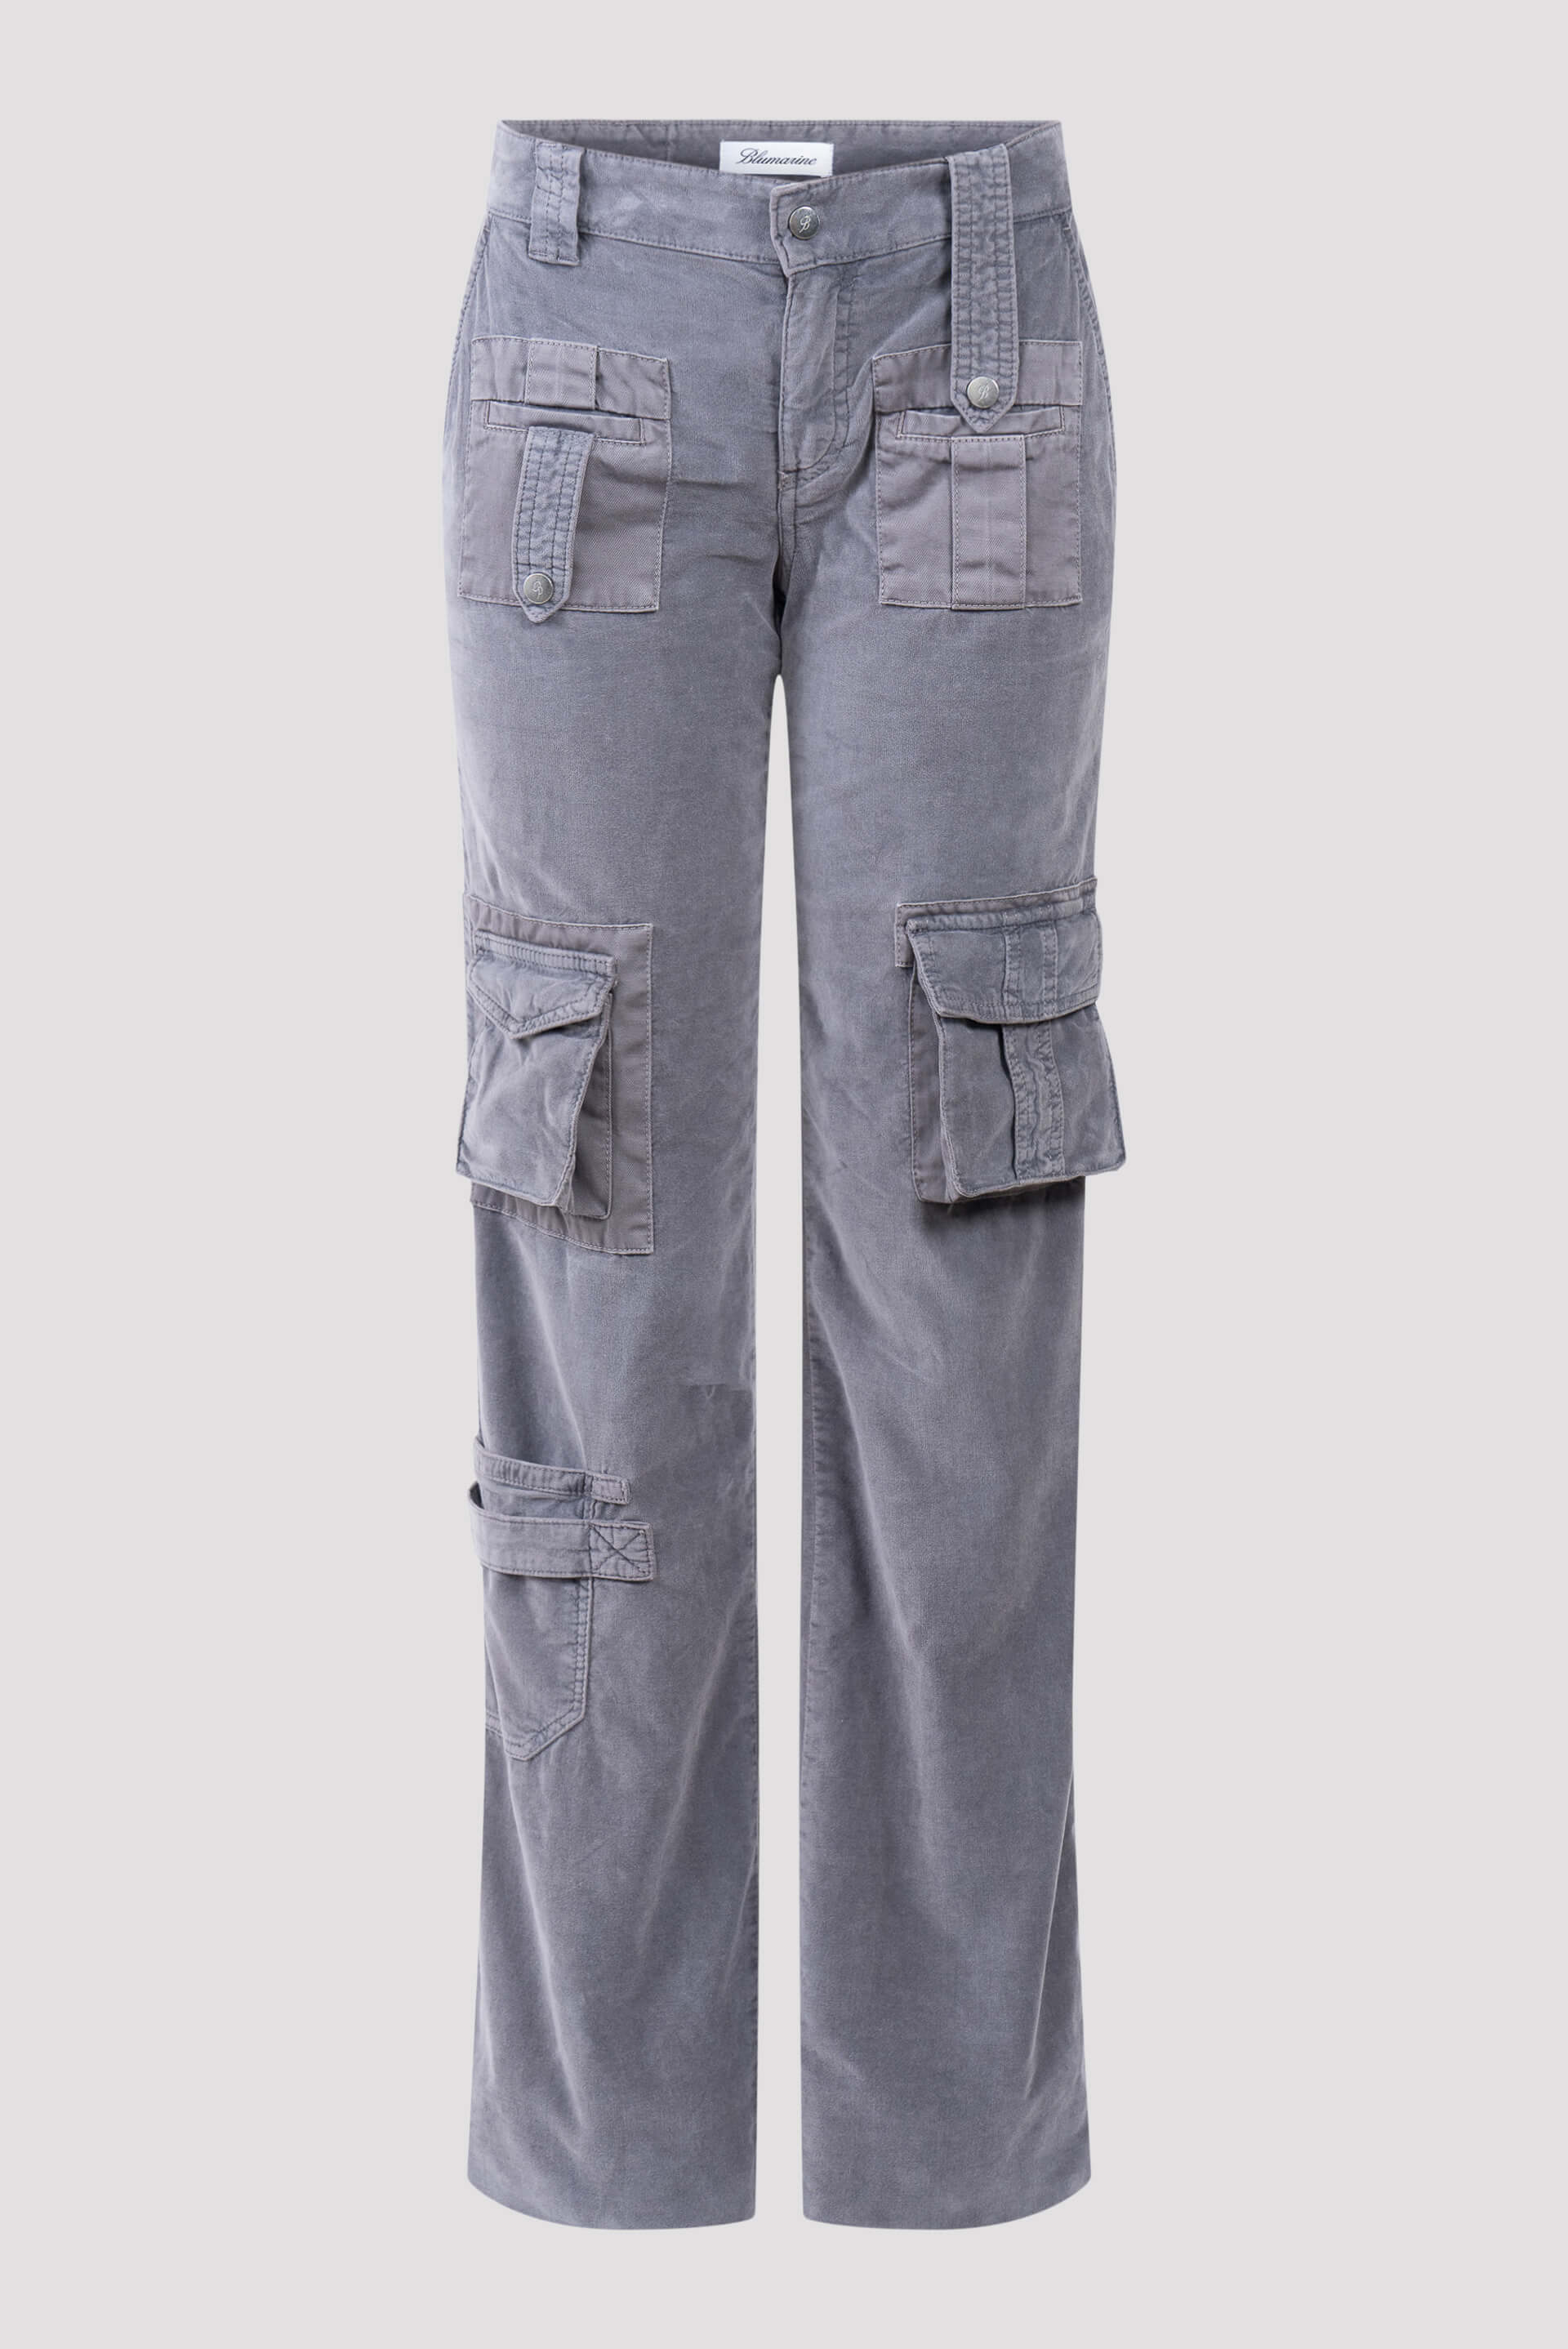 Serape Bootcut Cargo Pants - Camo | Bootcut, Best cargo pants, Cargo pants